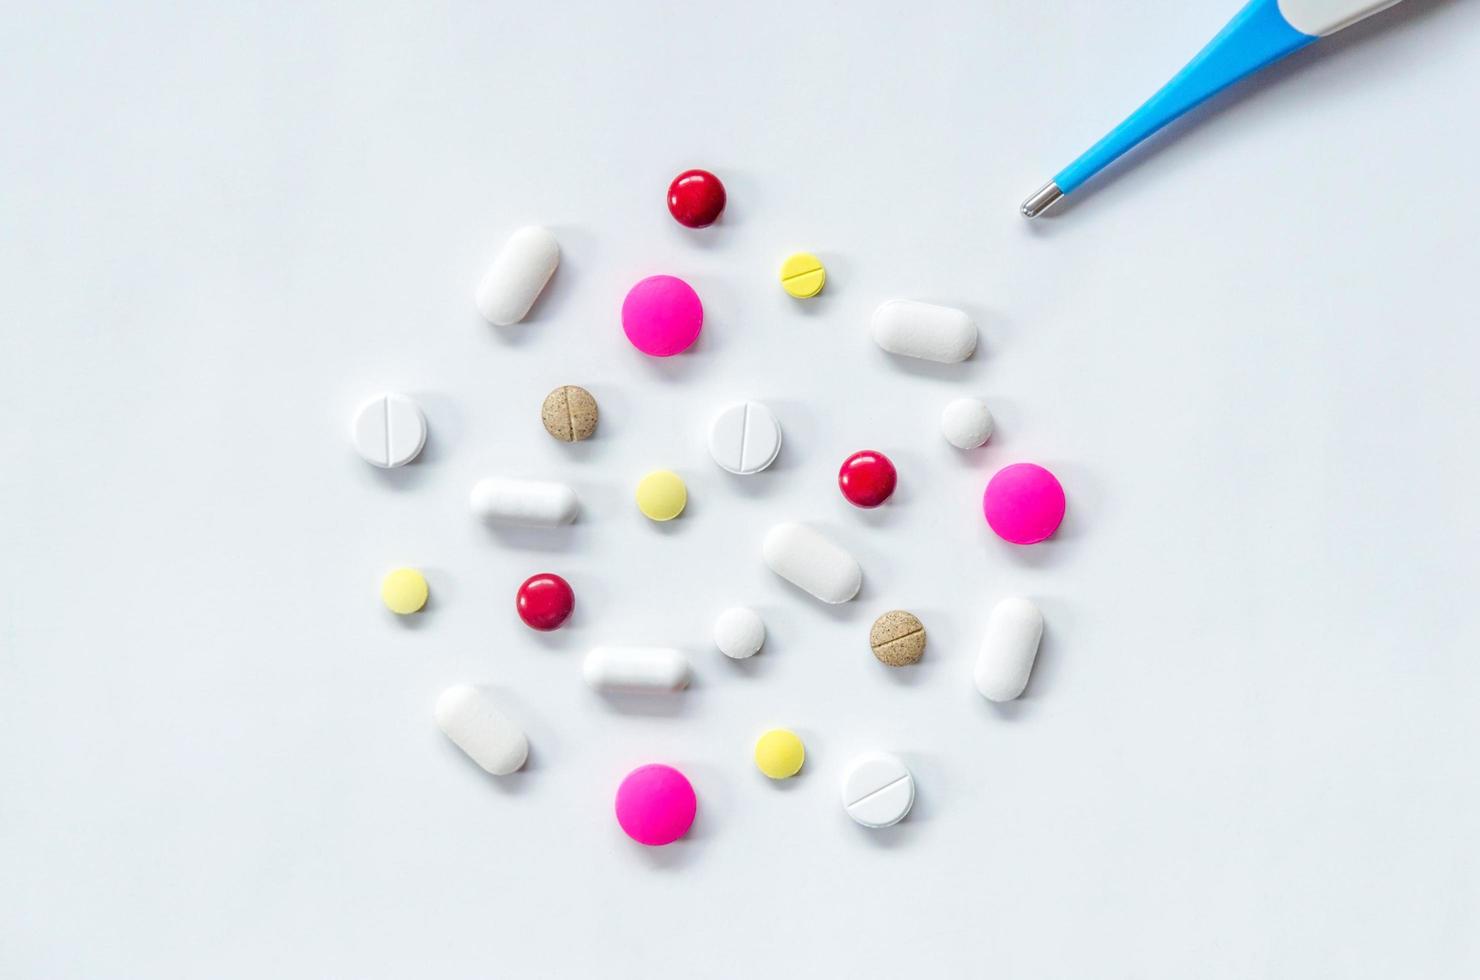 close-up de comprimidos e drogas, embalagem de comprimidos de drogas e comprimidos em cápsula. foto